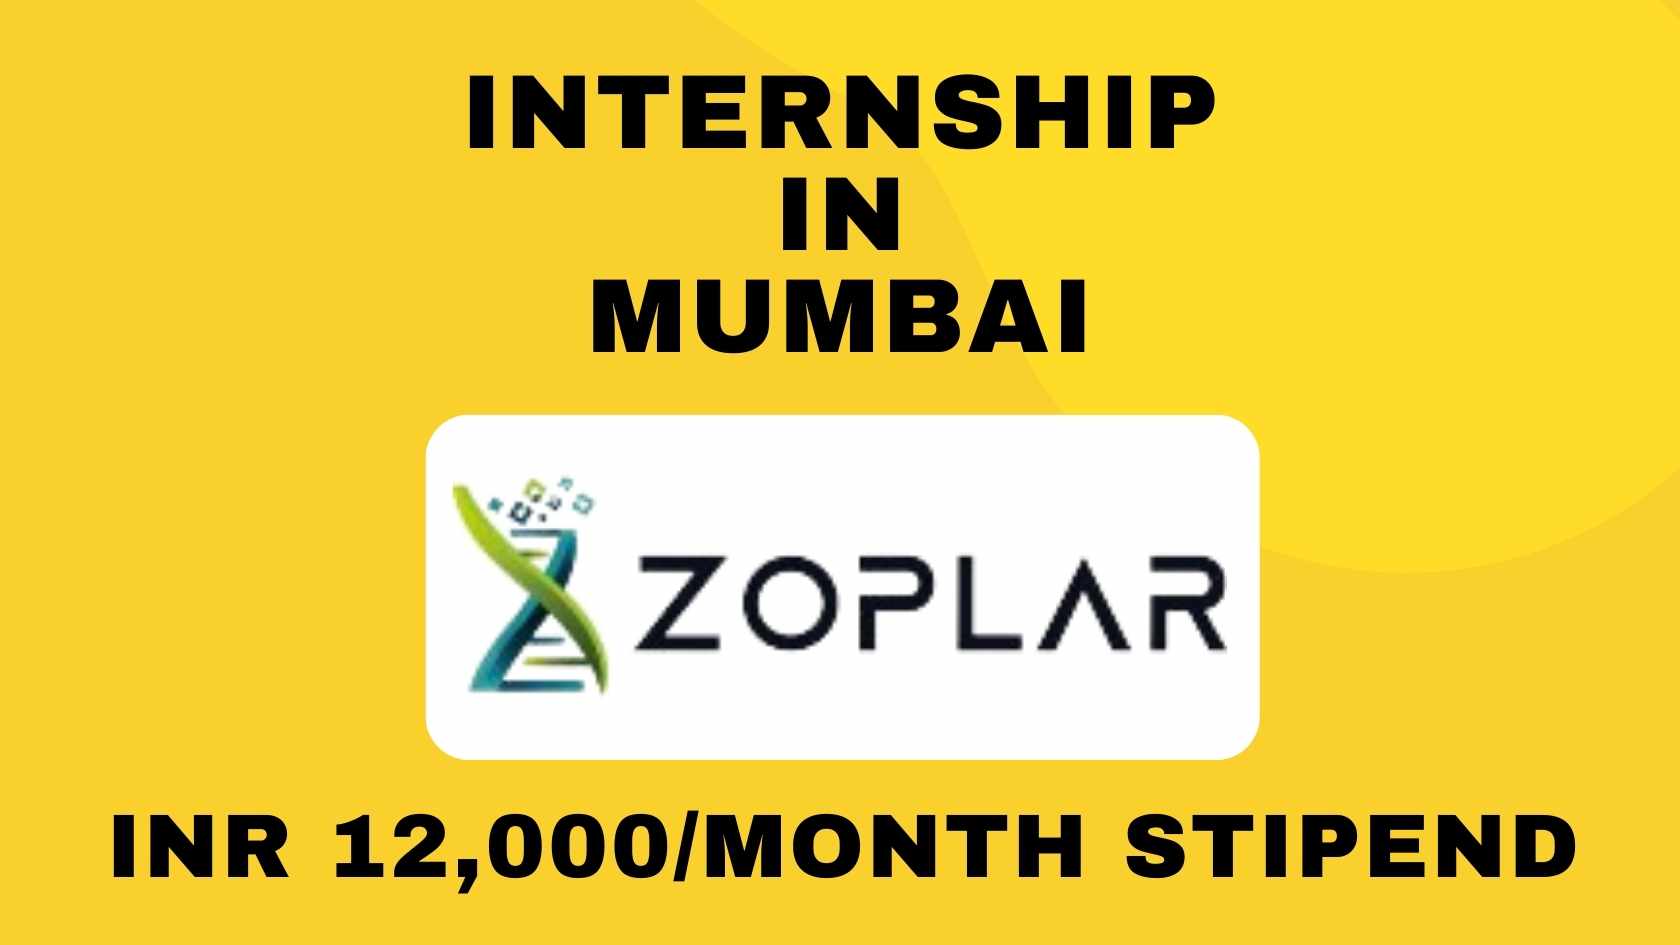 Zoplar Internship in Mumbai